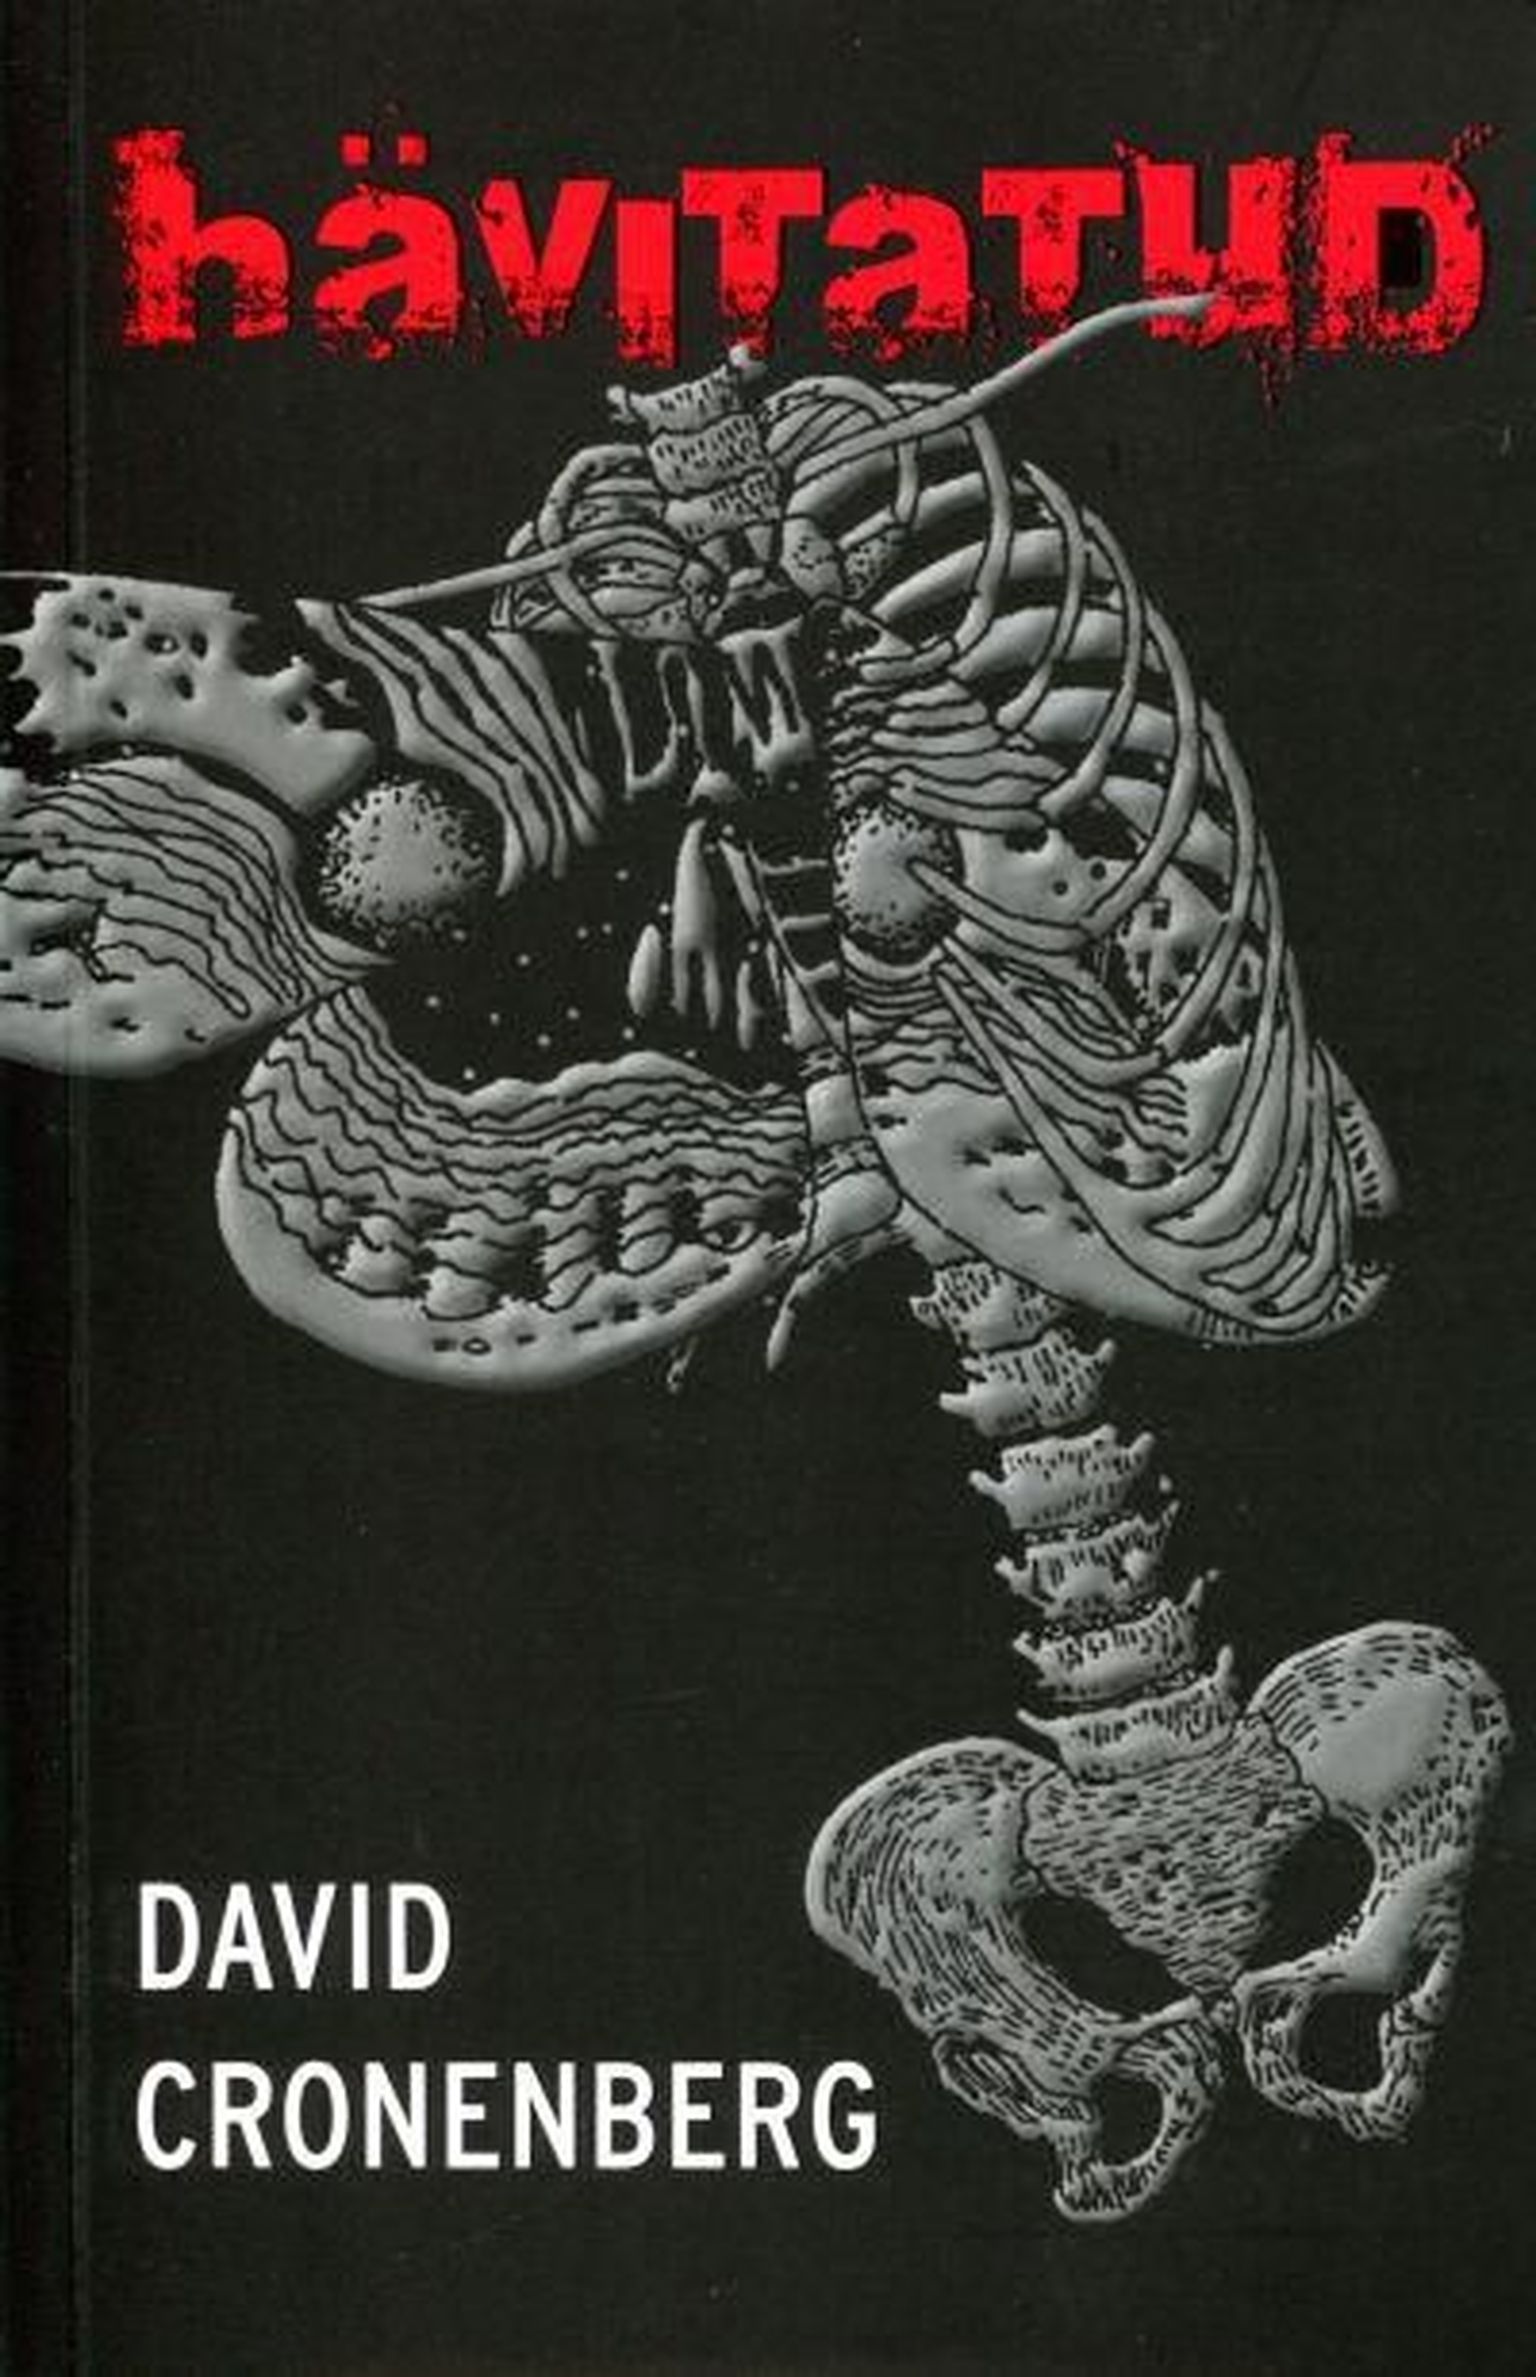 David Cronenberg "Hävitatud"